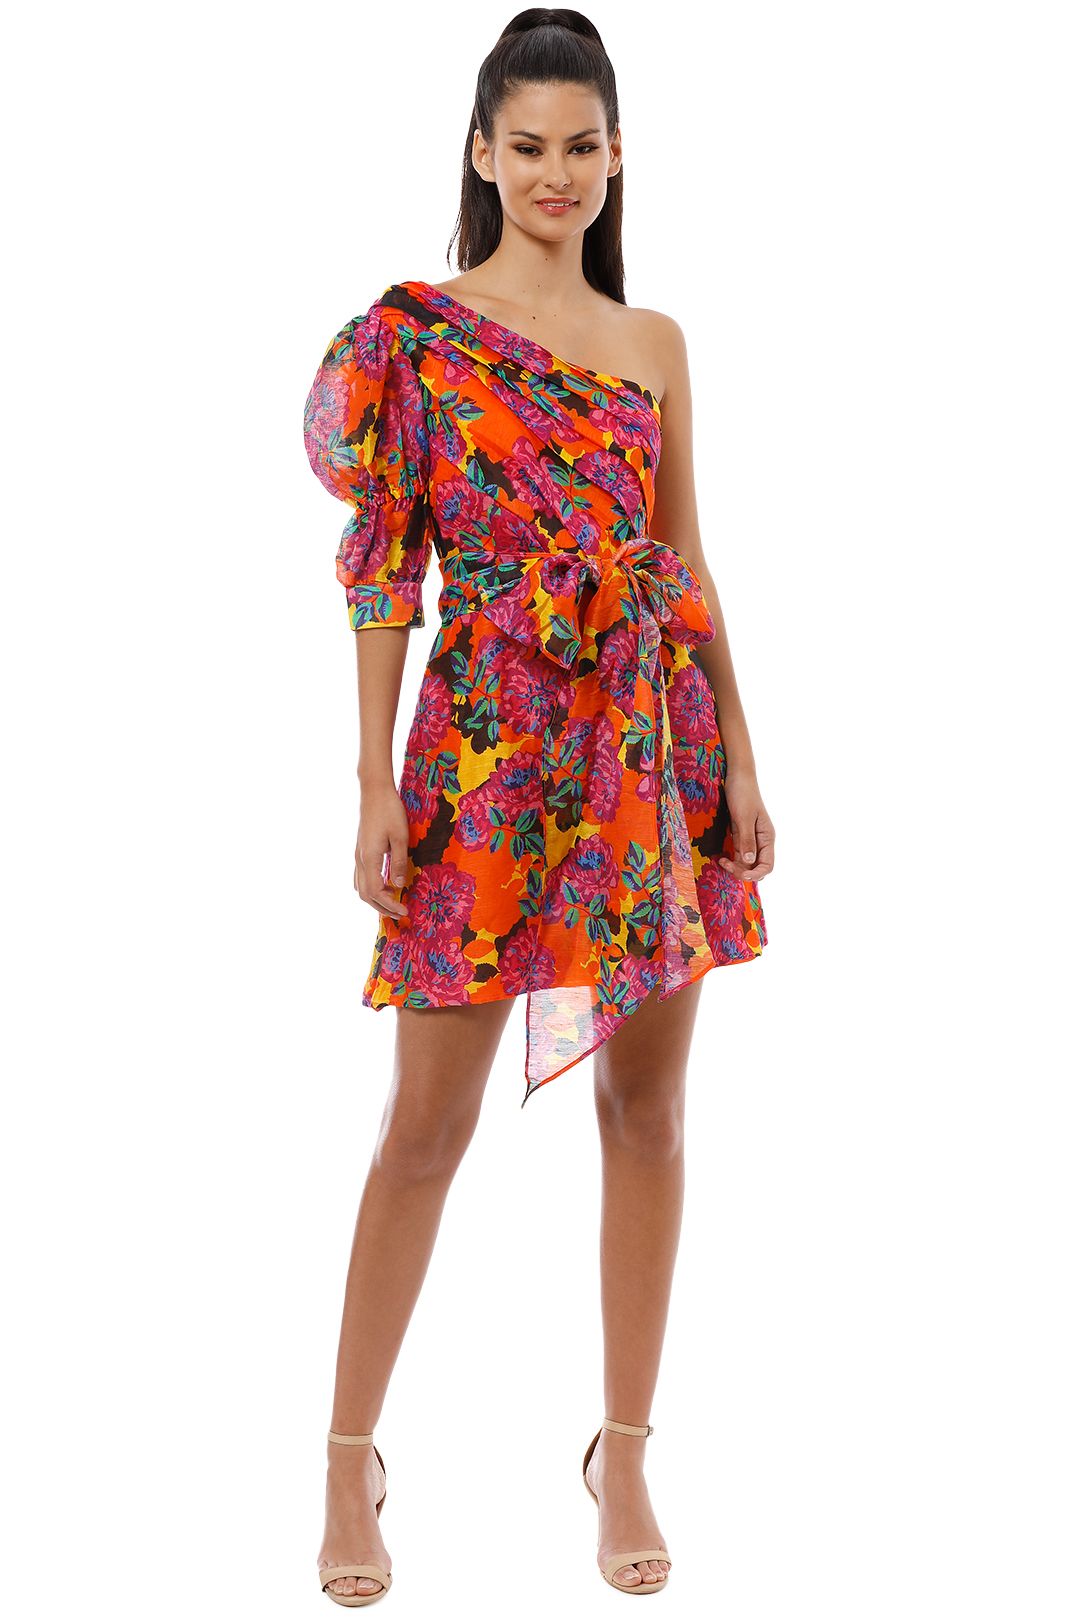 Talulah - Blossom Mini Dress - Multi - Front